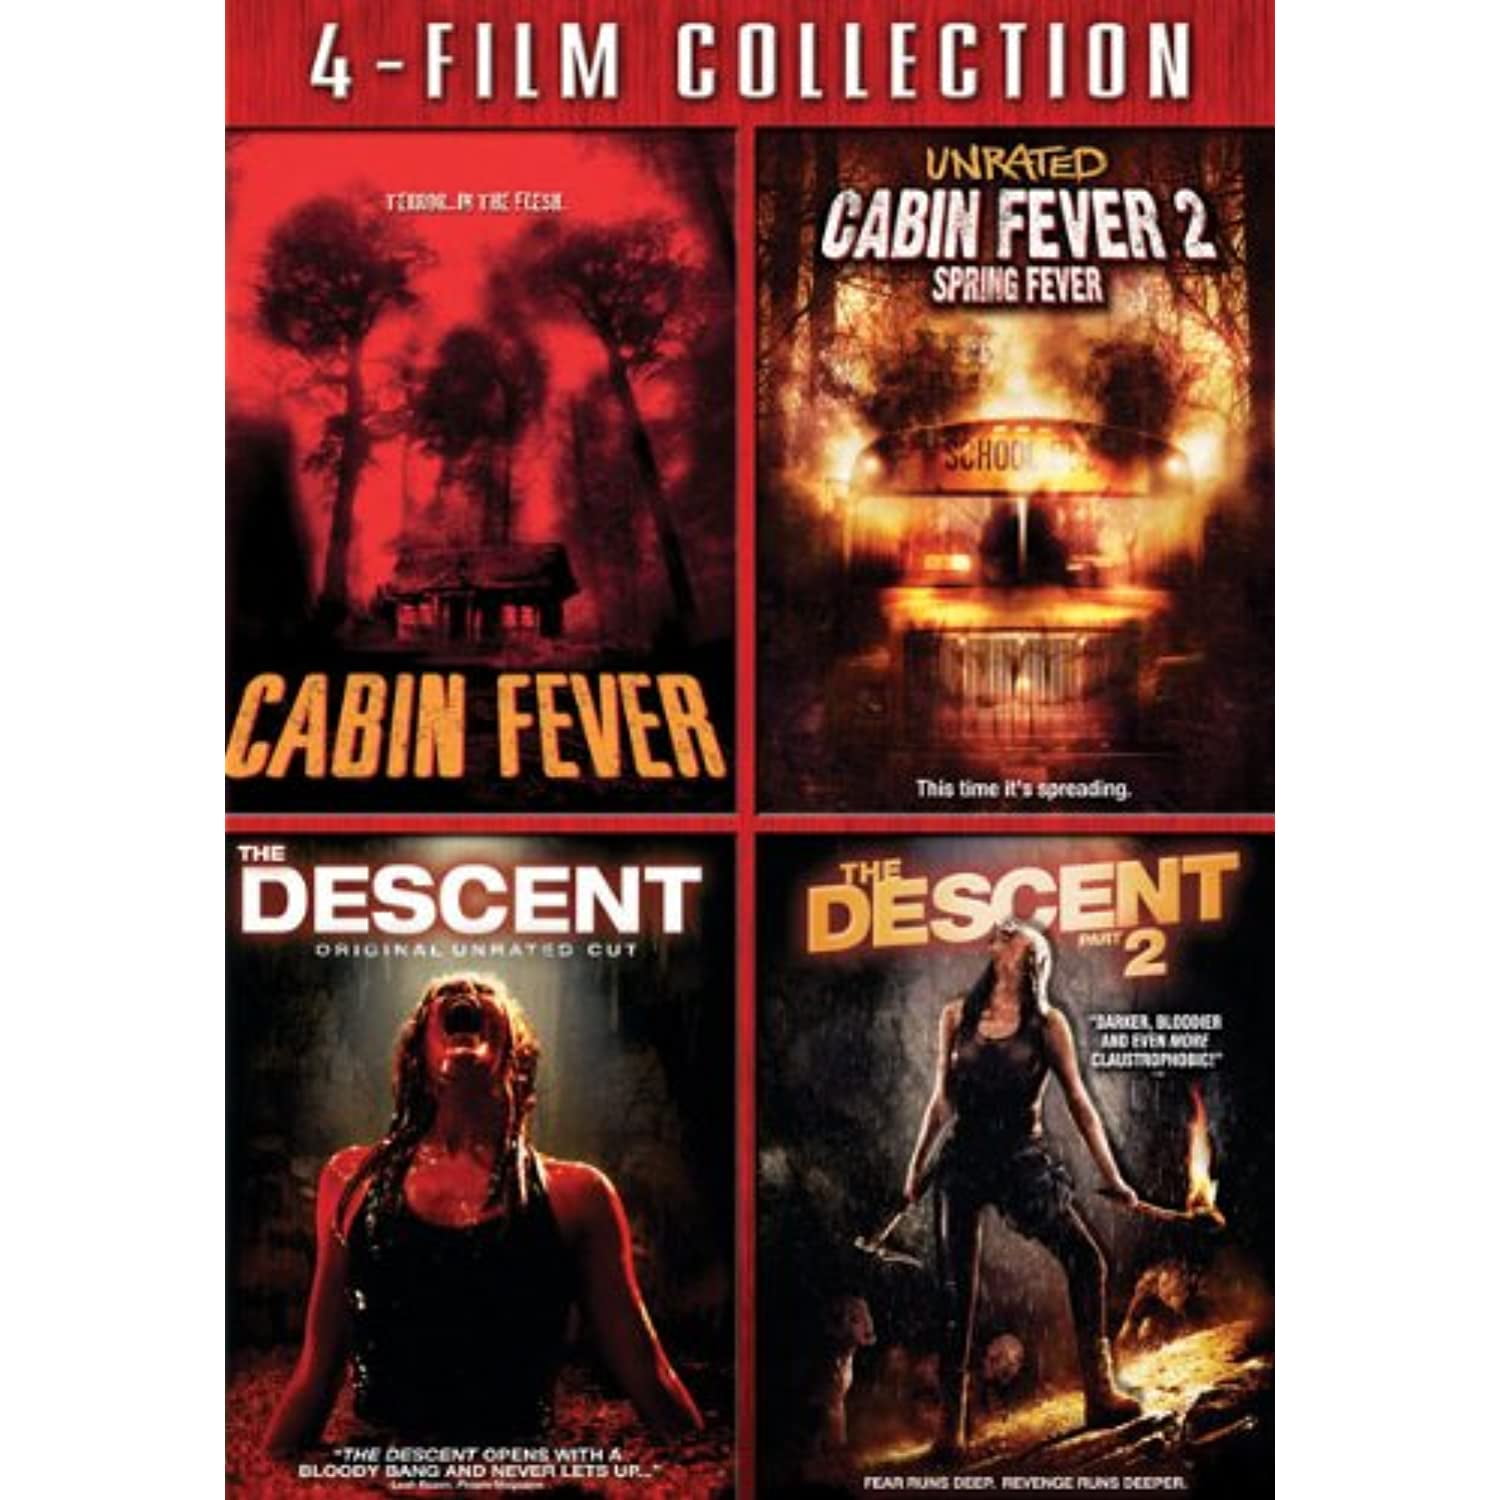 4-Film Collection Cabin Fever/ Cabin Fever 2/ Descent 2 [Dvd] - Walmart.com